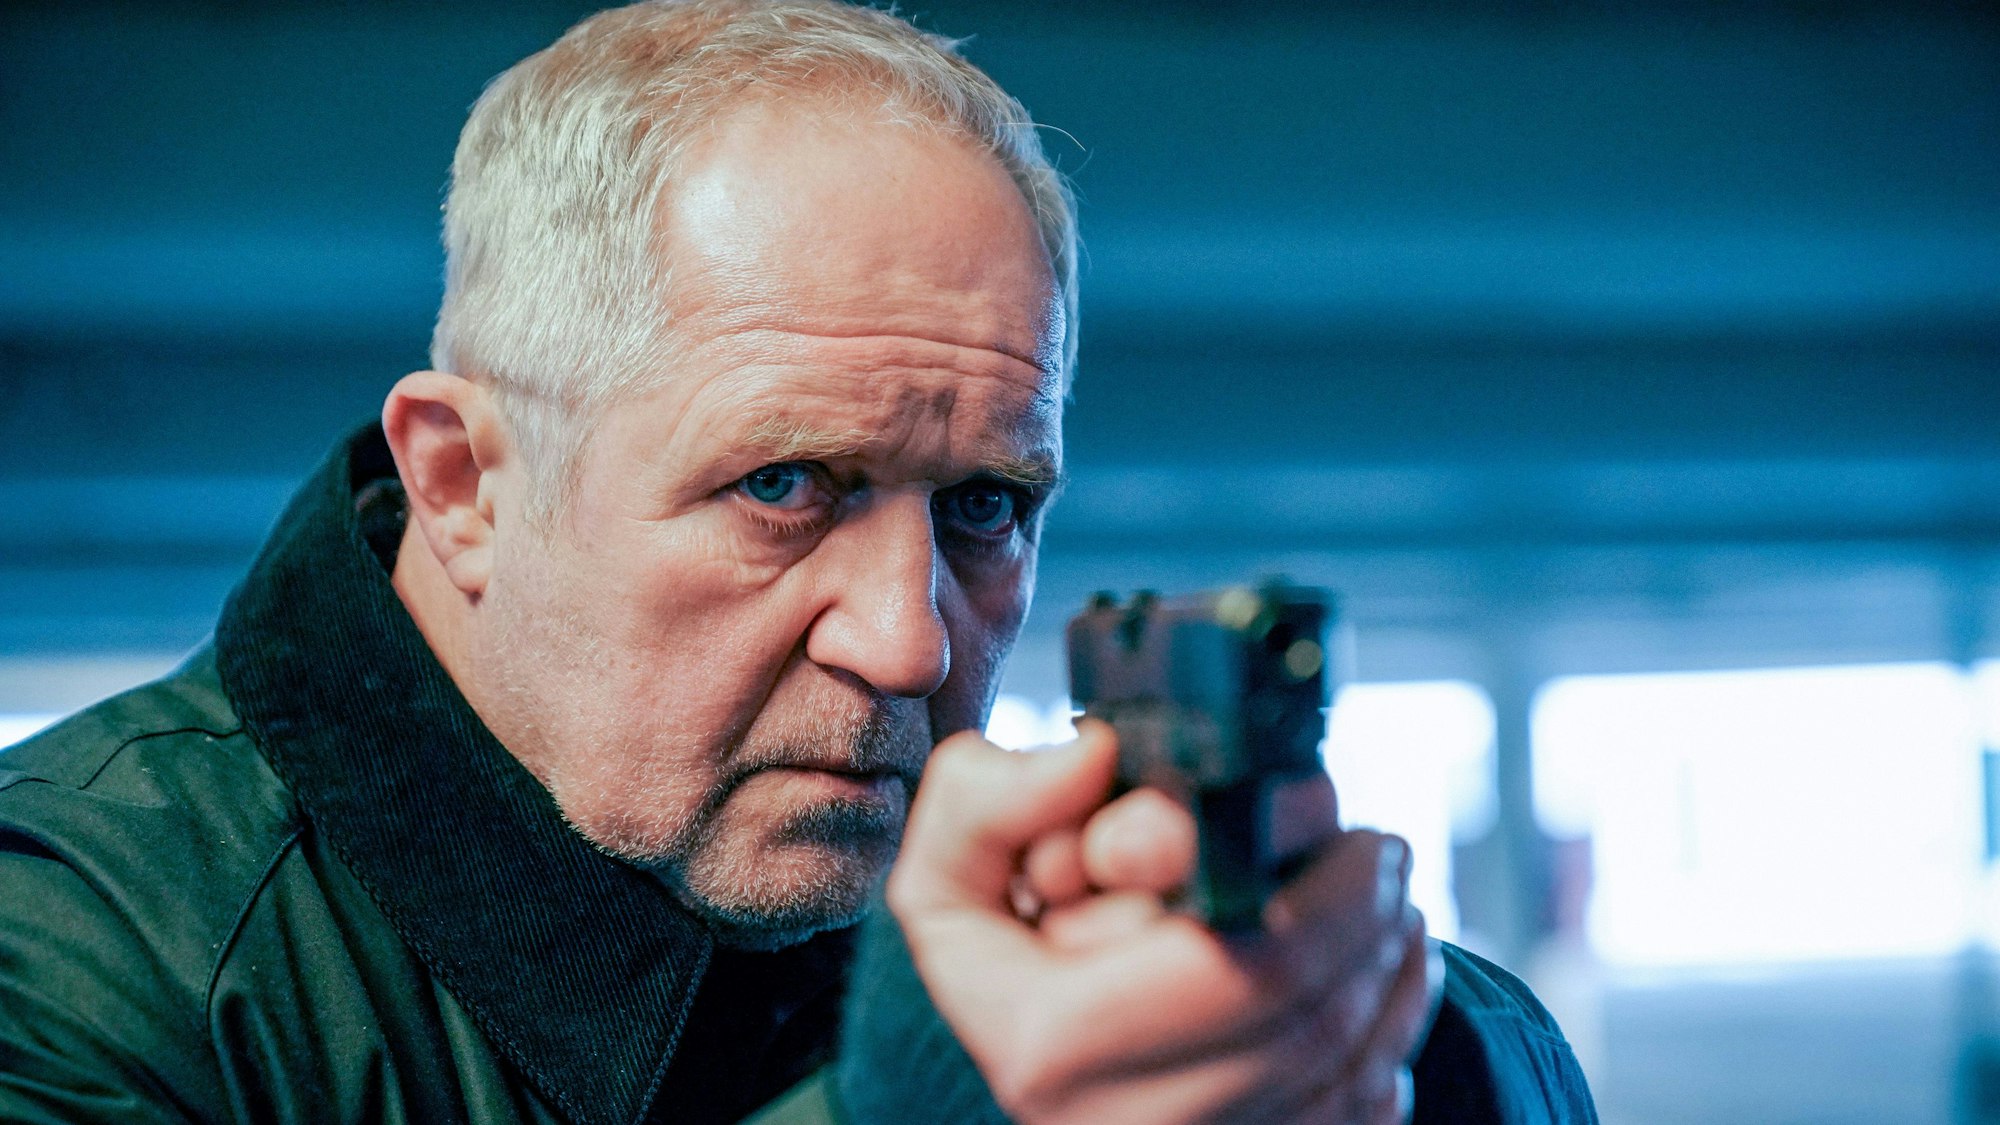 Moritz Eisner (Harald Krassnitzer) hält eine Waffe und zielt. Er sieht sehr konzentriert aus.